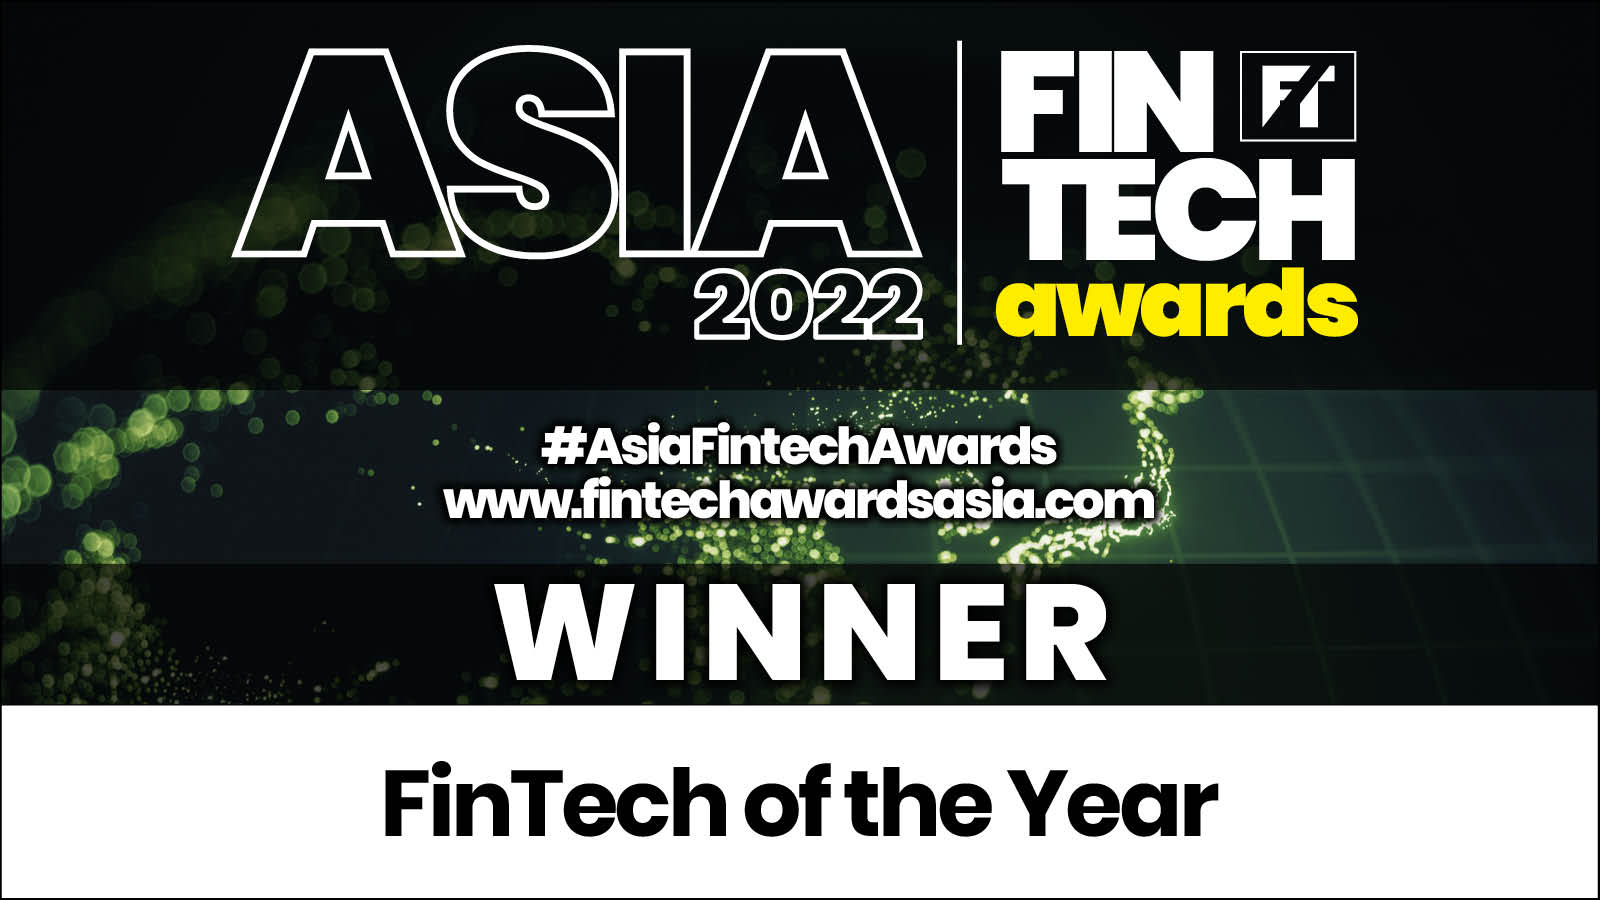 Airwallex named “FinTech of the Year” at Asia FinTech Awards 2022